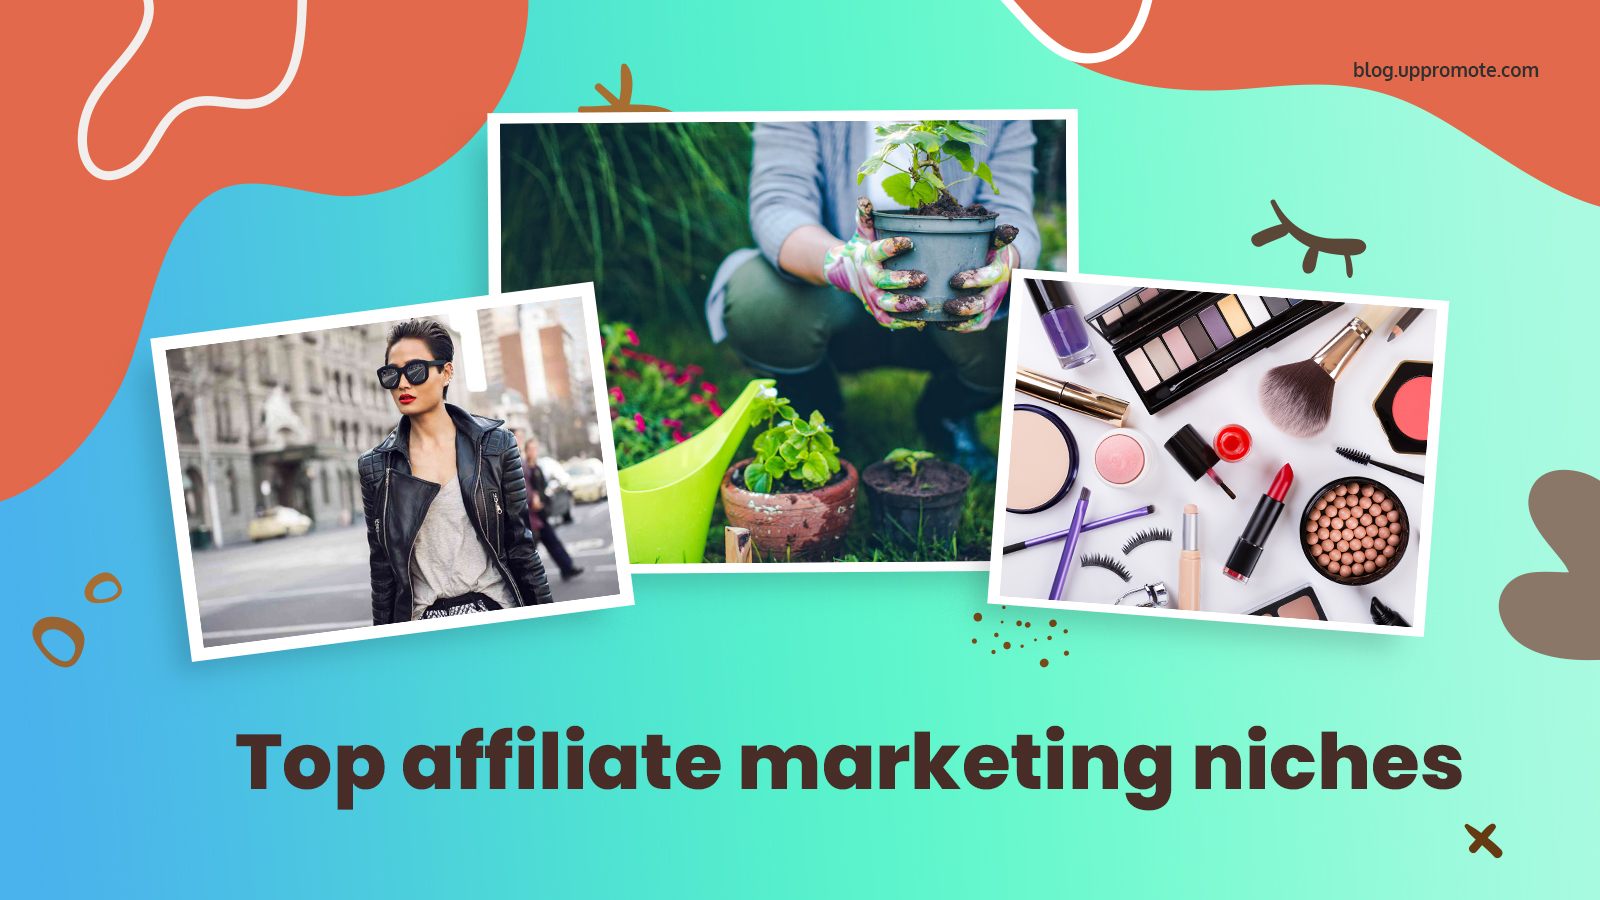 The best affiliate marketing niche in 2021